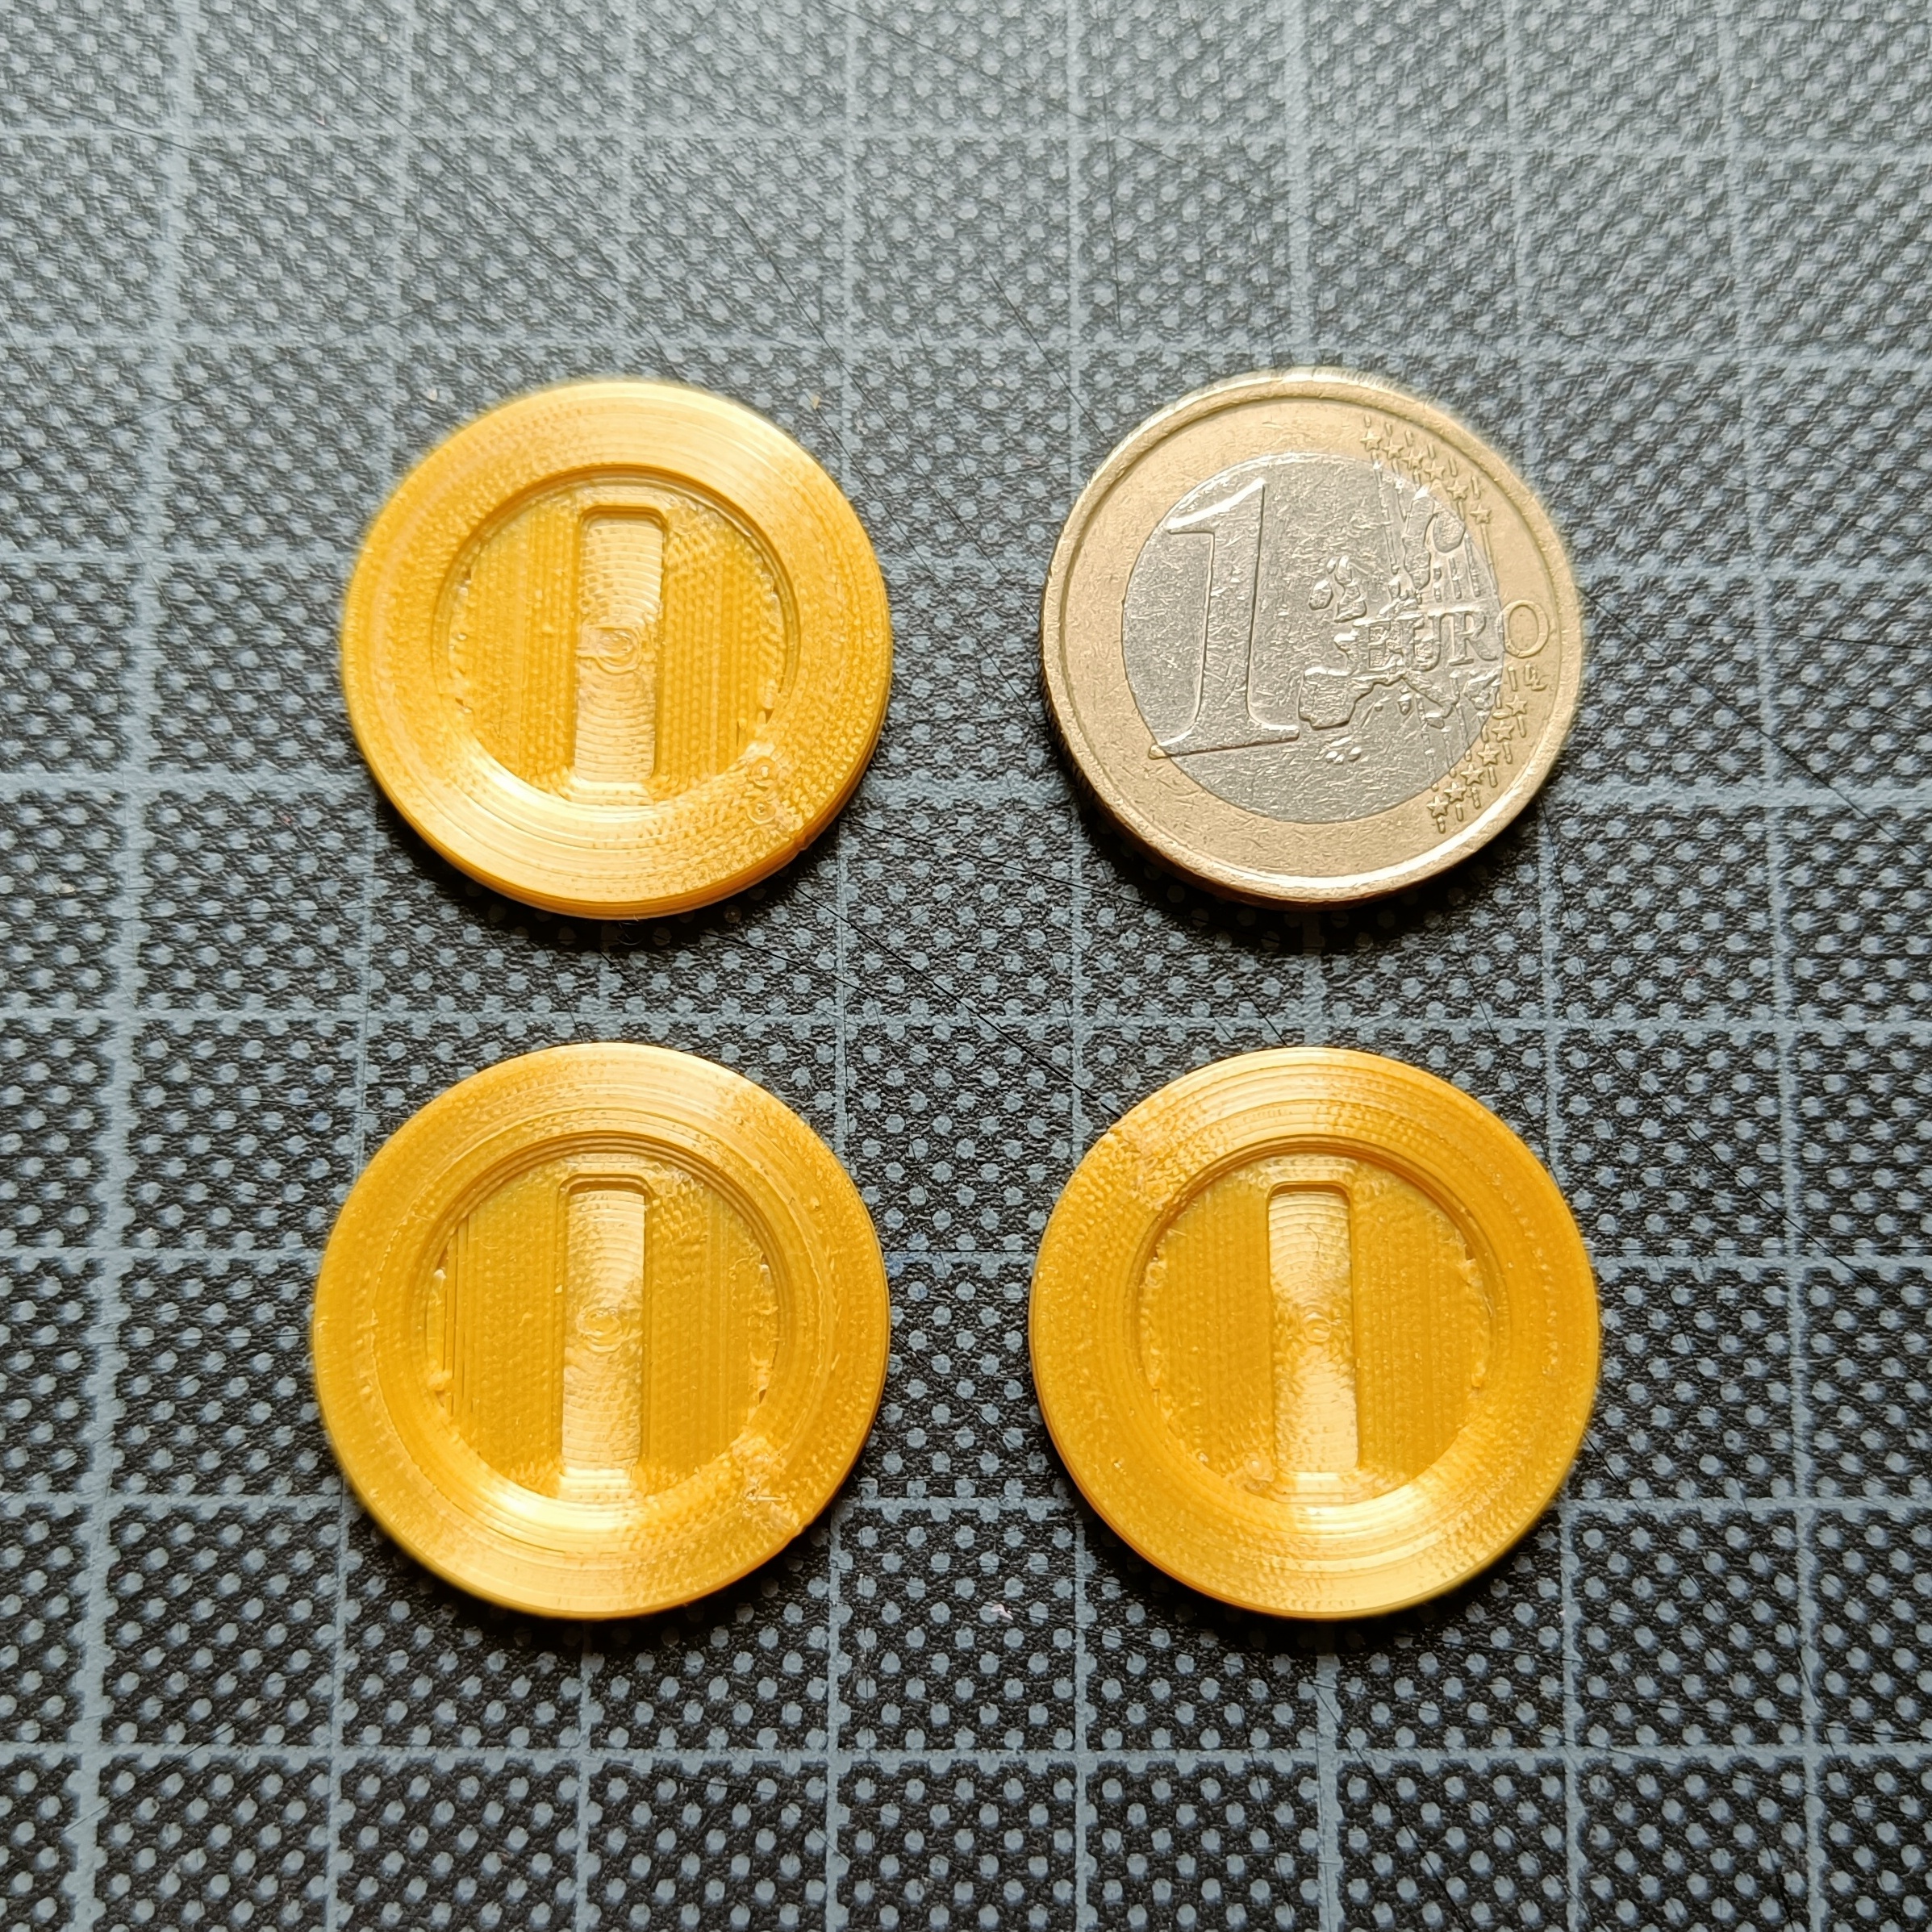 Super Mario Coin - 1 € Size for Shopping cart